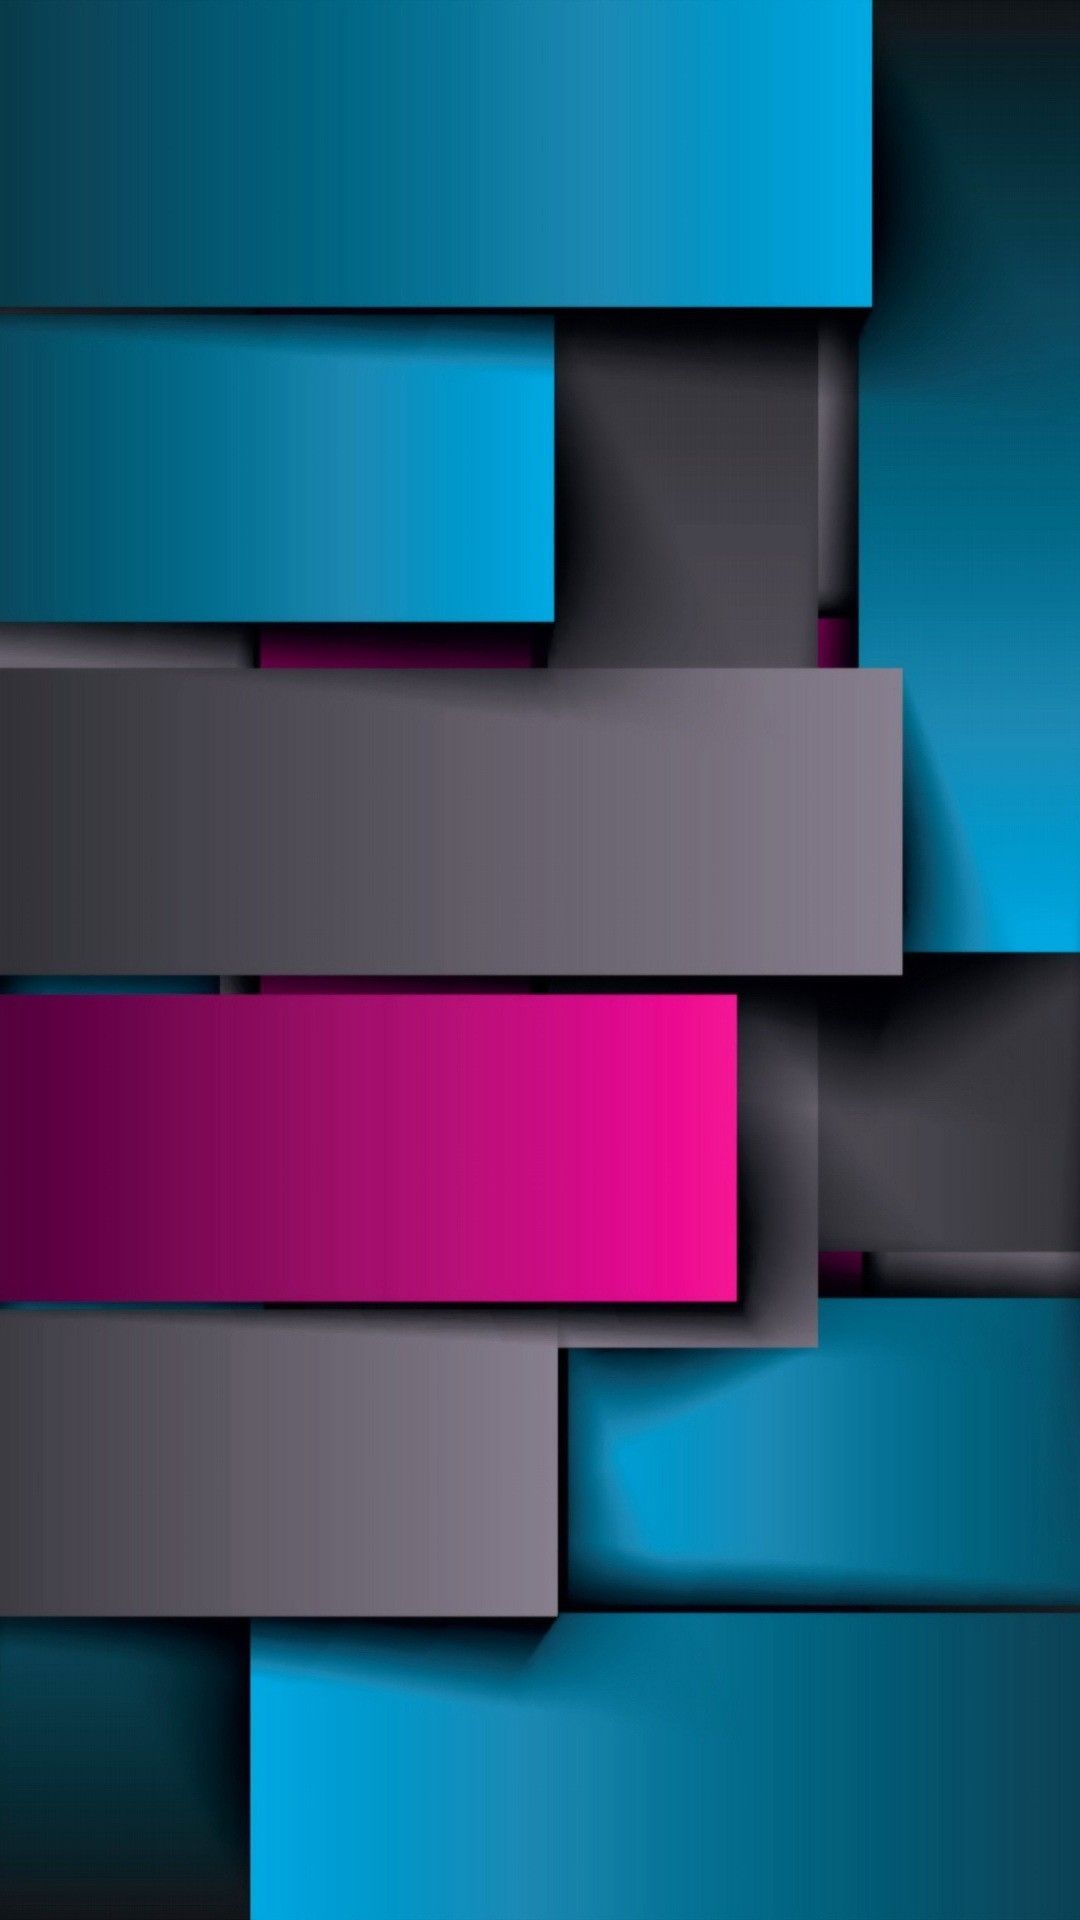 beste hintergrundbilder für den mobilen bildschirm,blau,türkis,violett,linie,grafikdesign